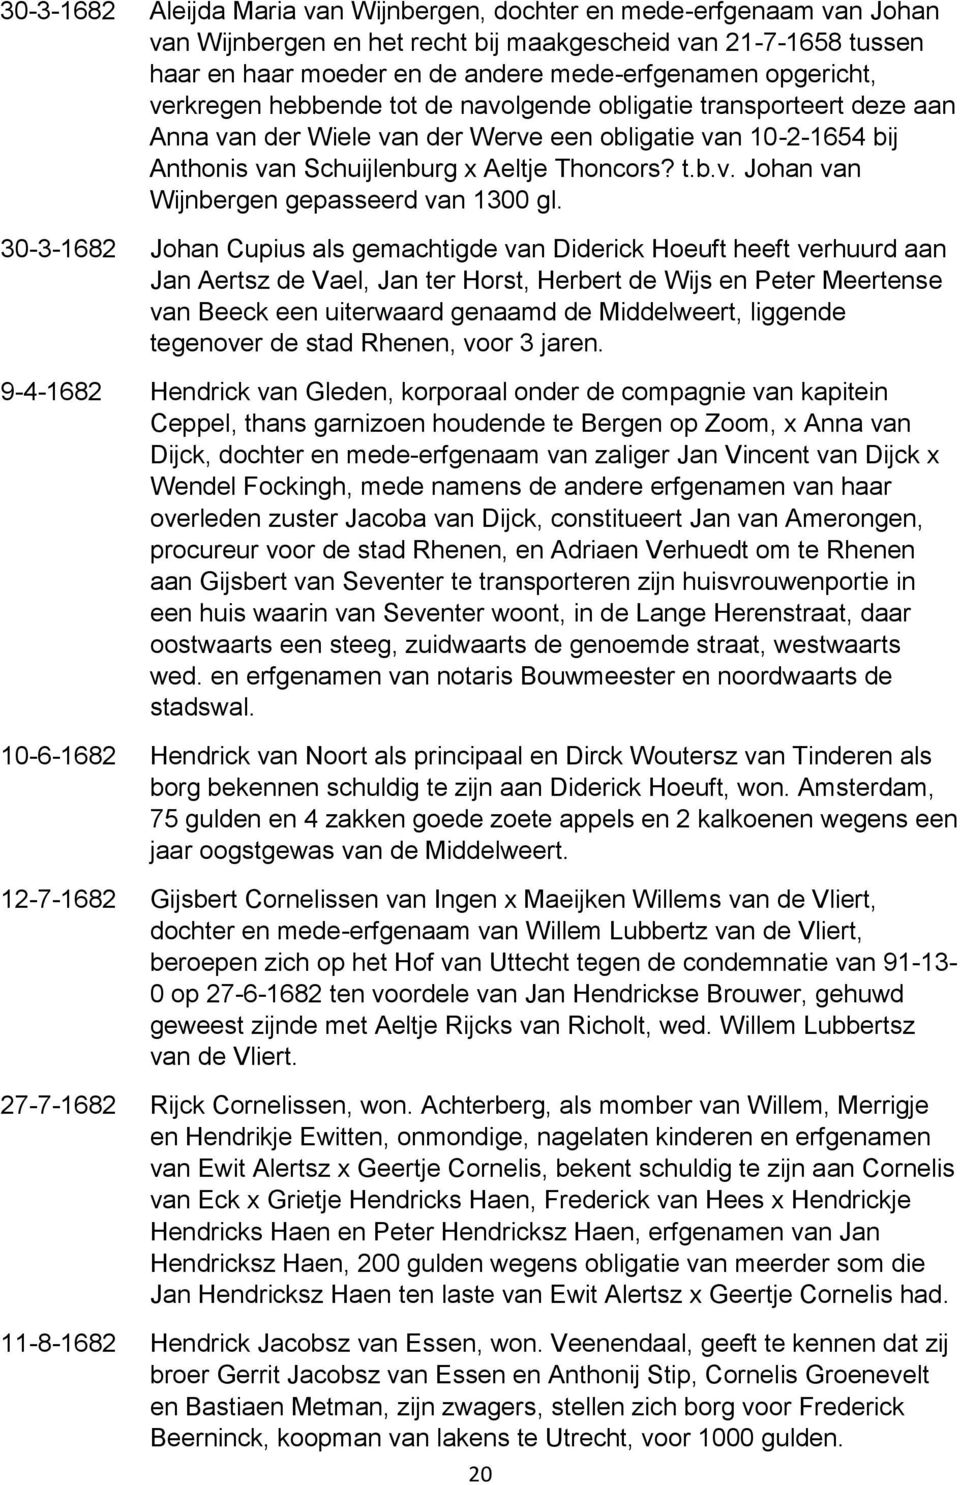 30-3-1682 Johan Cupius als gemachtigde van Diderick Hoeuft heeft verhuurd aan Jan Aertsz de Vael, Jan ter Horst, Herbert de Wijs en Peter Meertense van Beeck een uiterwaard genaamd de Middelweert,